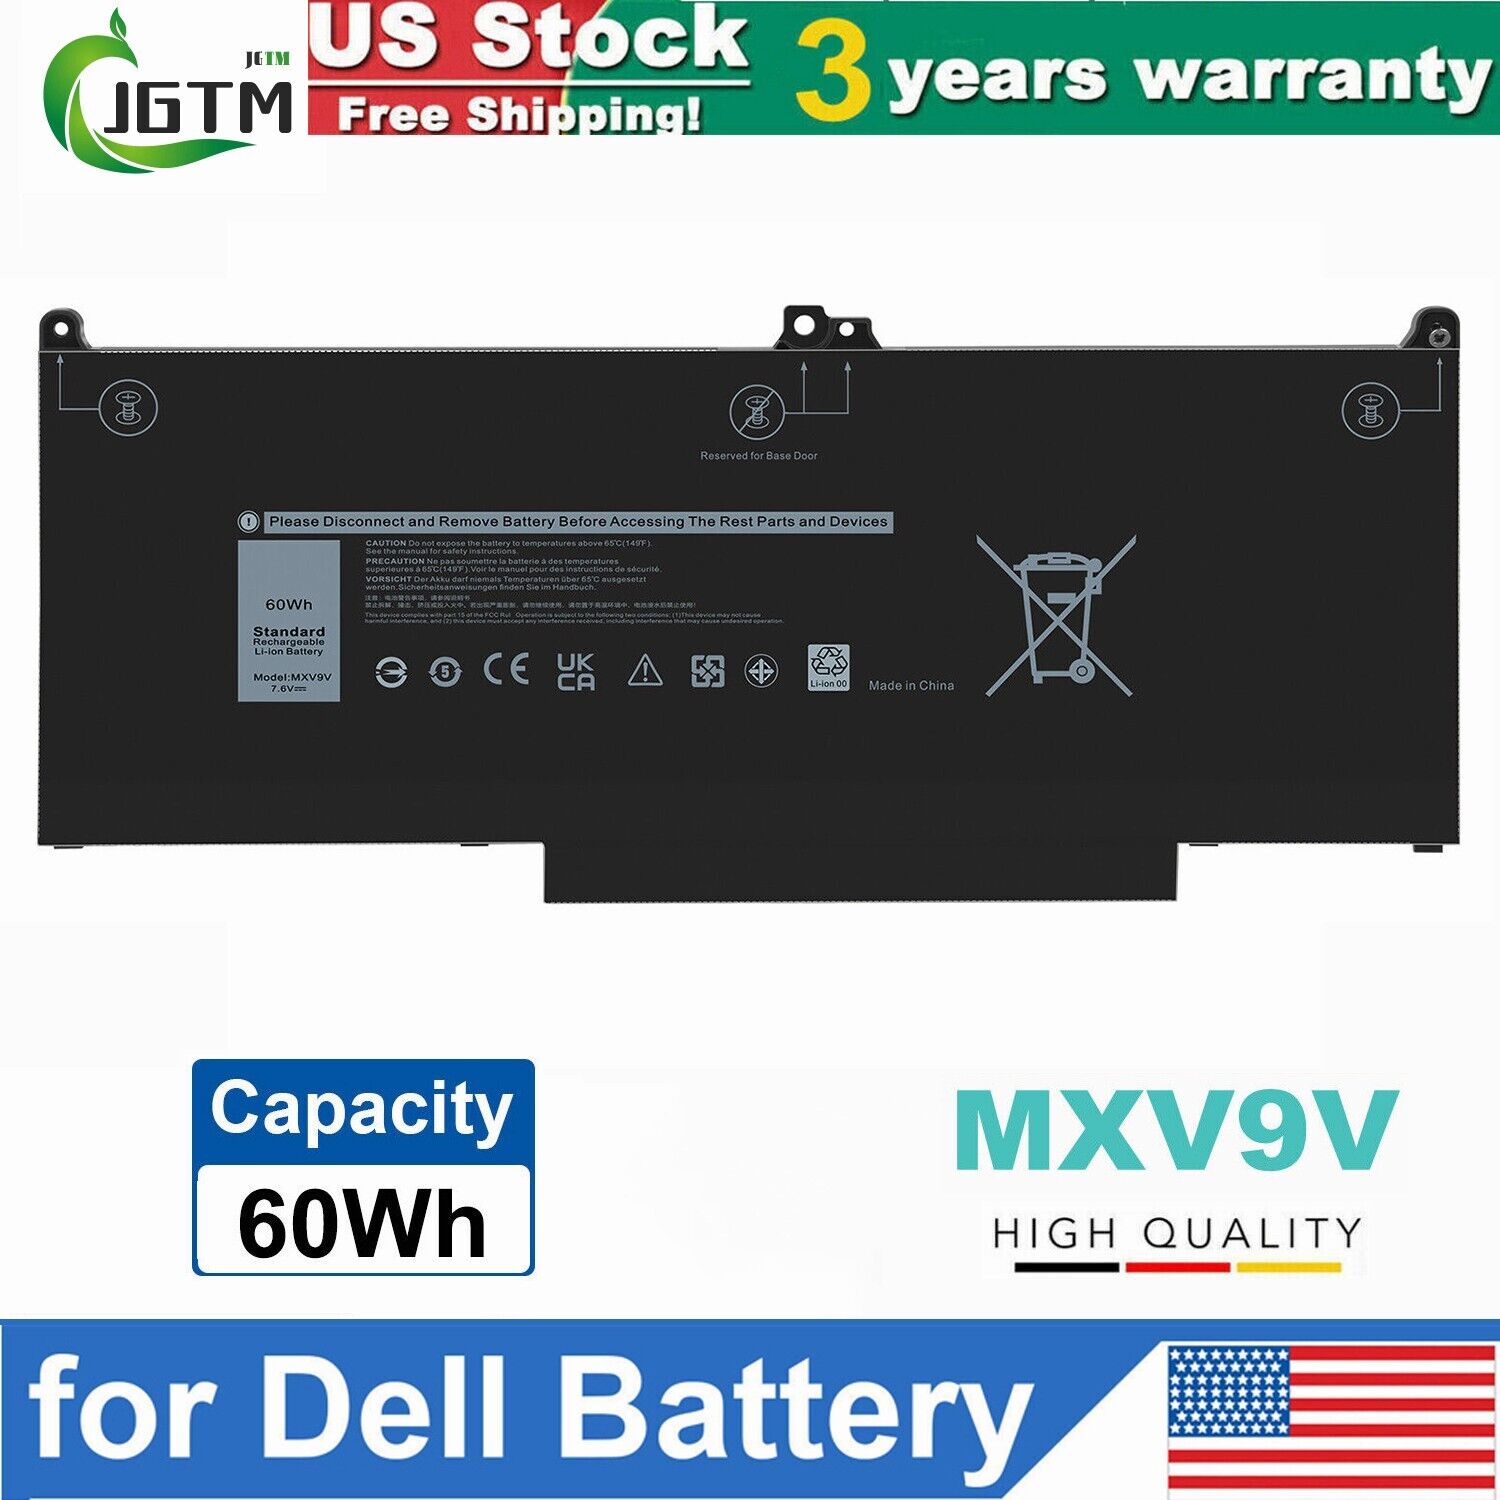 MXV9V Battery For Dell Latitude 5300 5310 7300 7400 5VC2M N2K62 Type 7.6V 60Wh